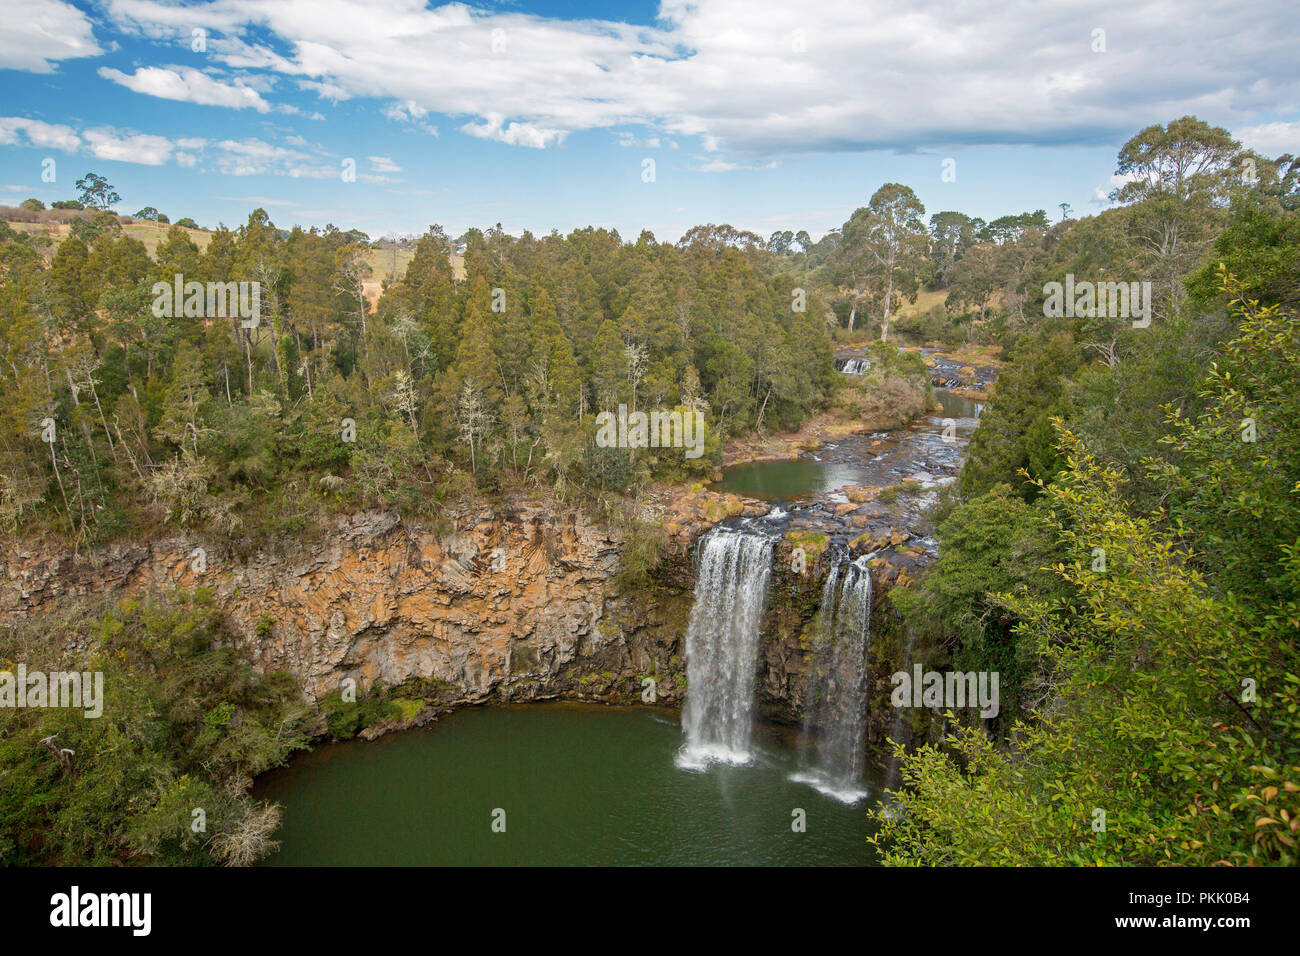 Dangar espectacular cae en Río Bellinger derrama sobre acantilados rocosos con dobladillo con bosques y salpicar Emerald Pool cerca de Dorrigo, NSW, Australia Foto de stock